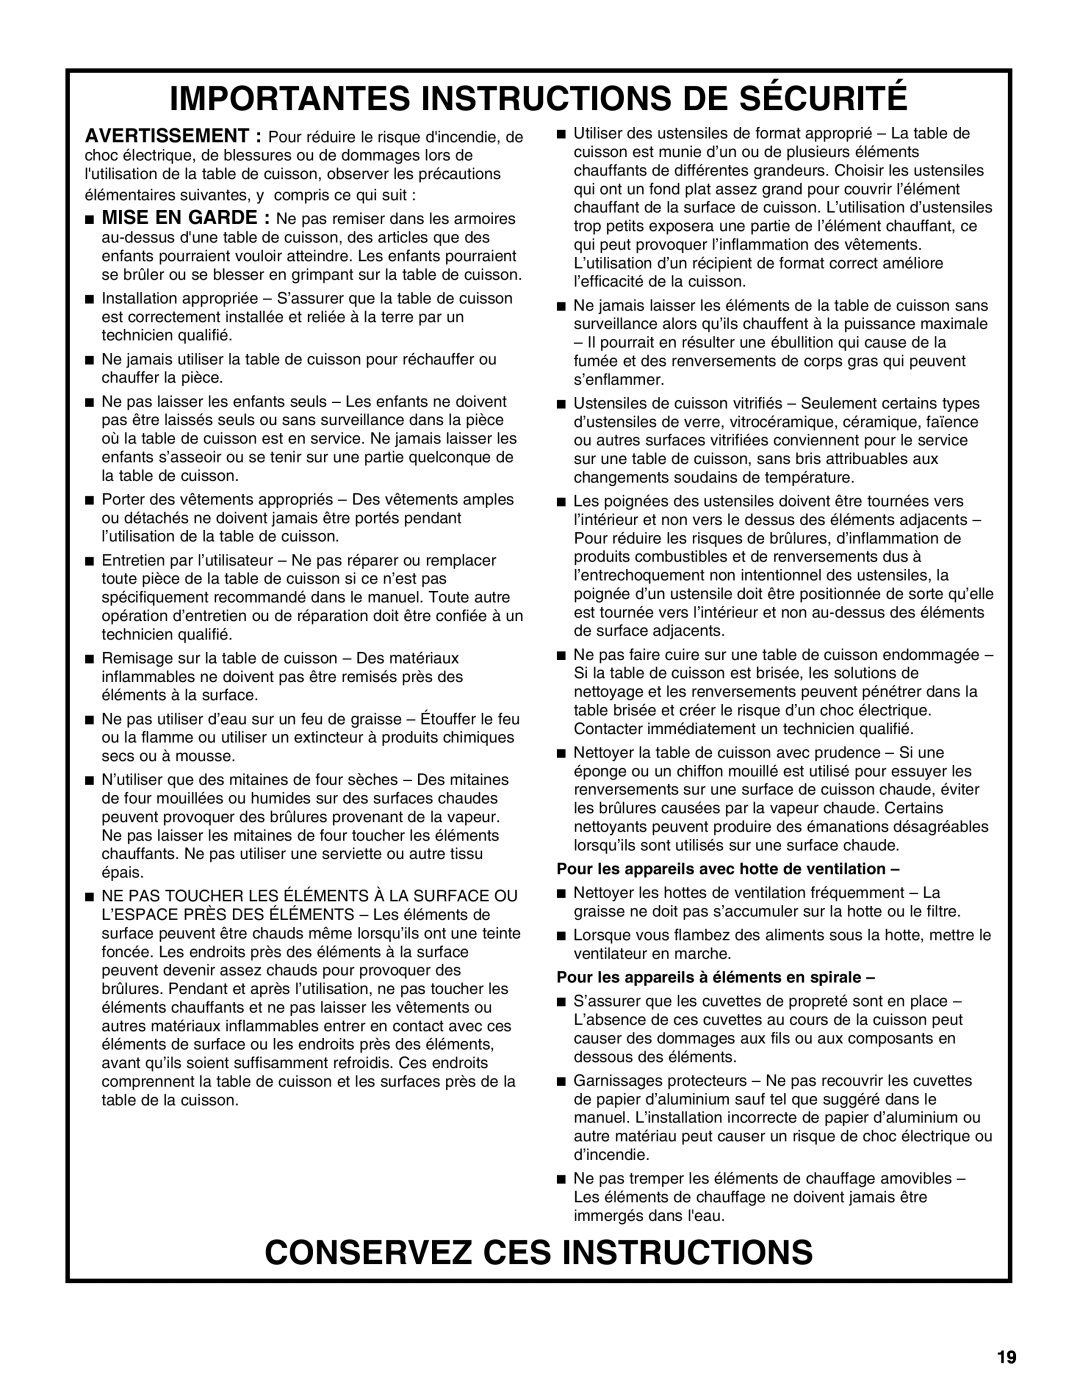 KitchenAid KECC056, KECC507, KECC506 manual Importantes Instructions De Sécurité, Conservez Ces Instructions 